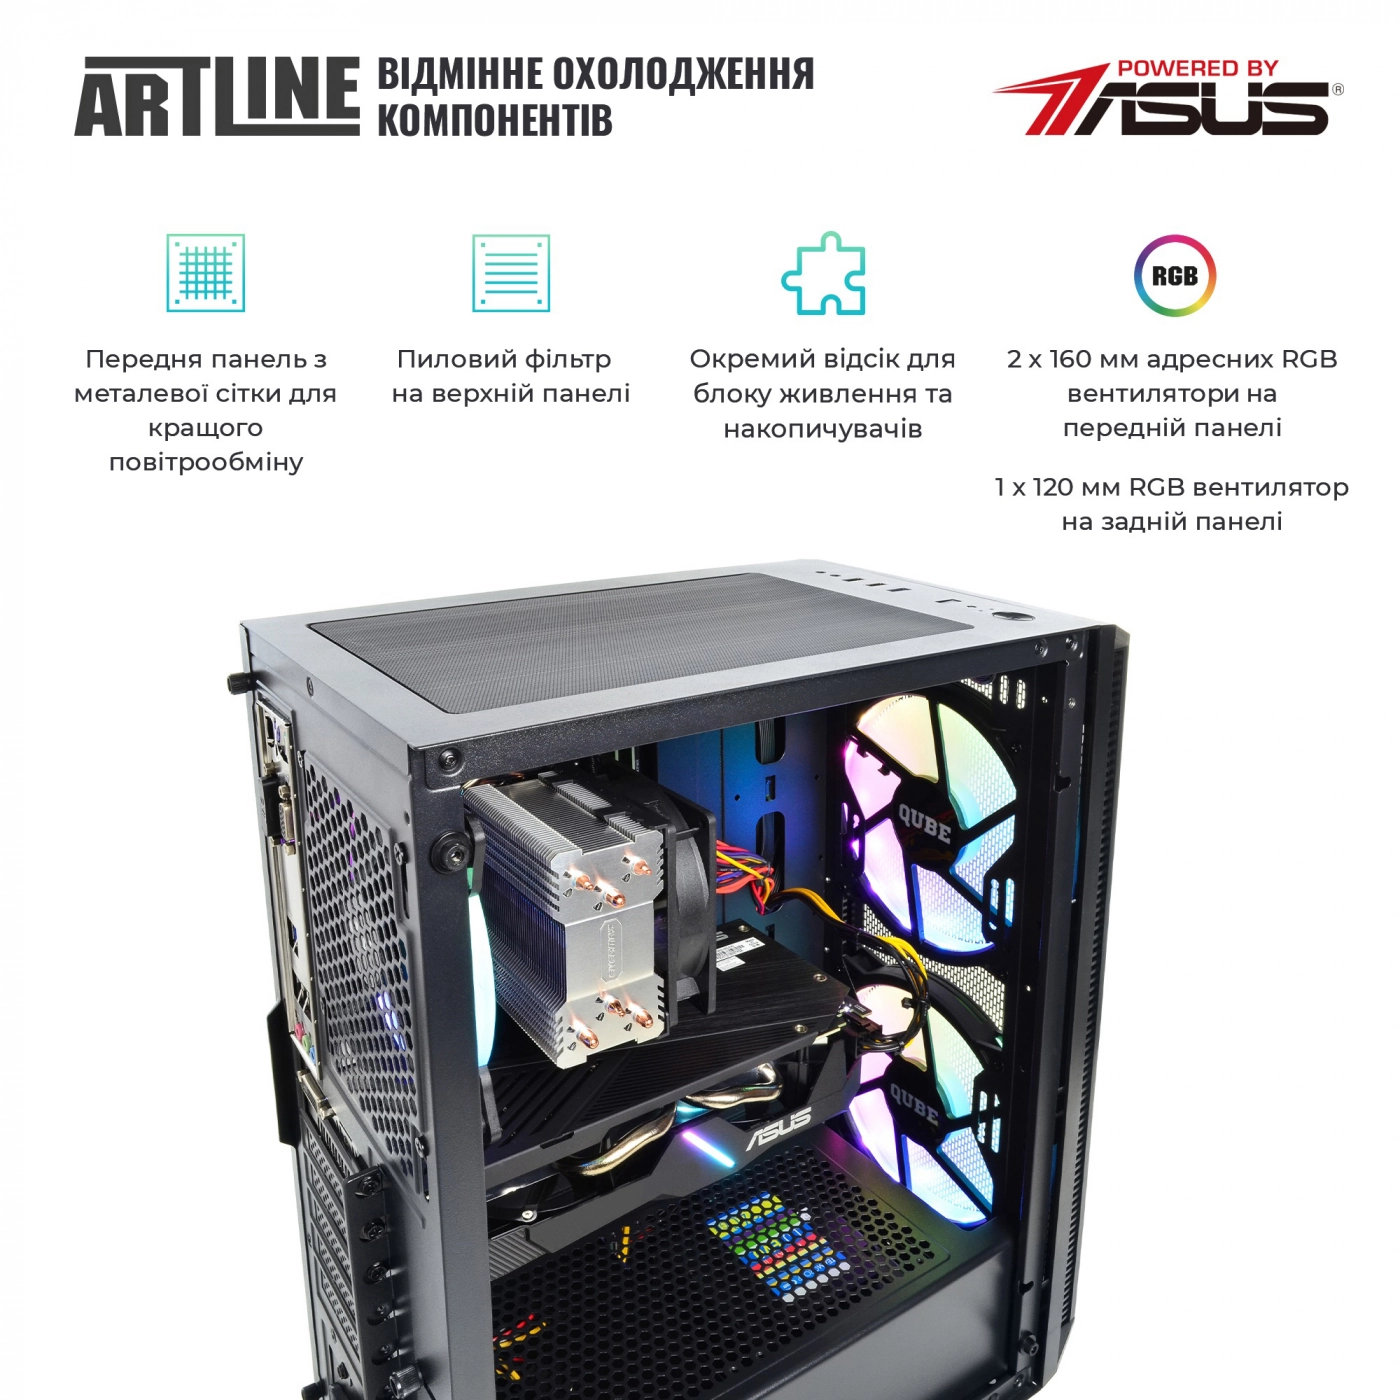 Купить Компьютер ARTLINE Gaming X65v37 - фото 2